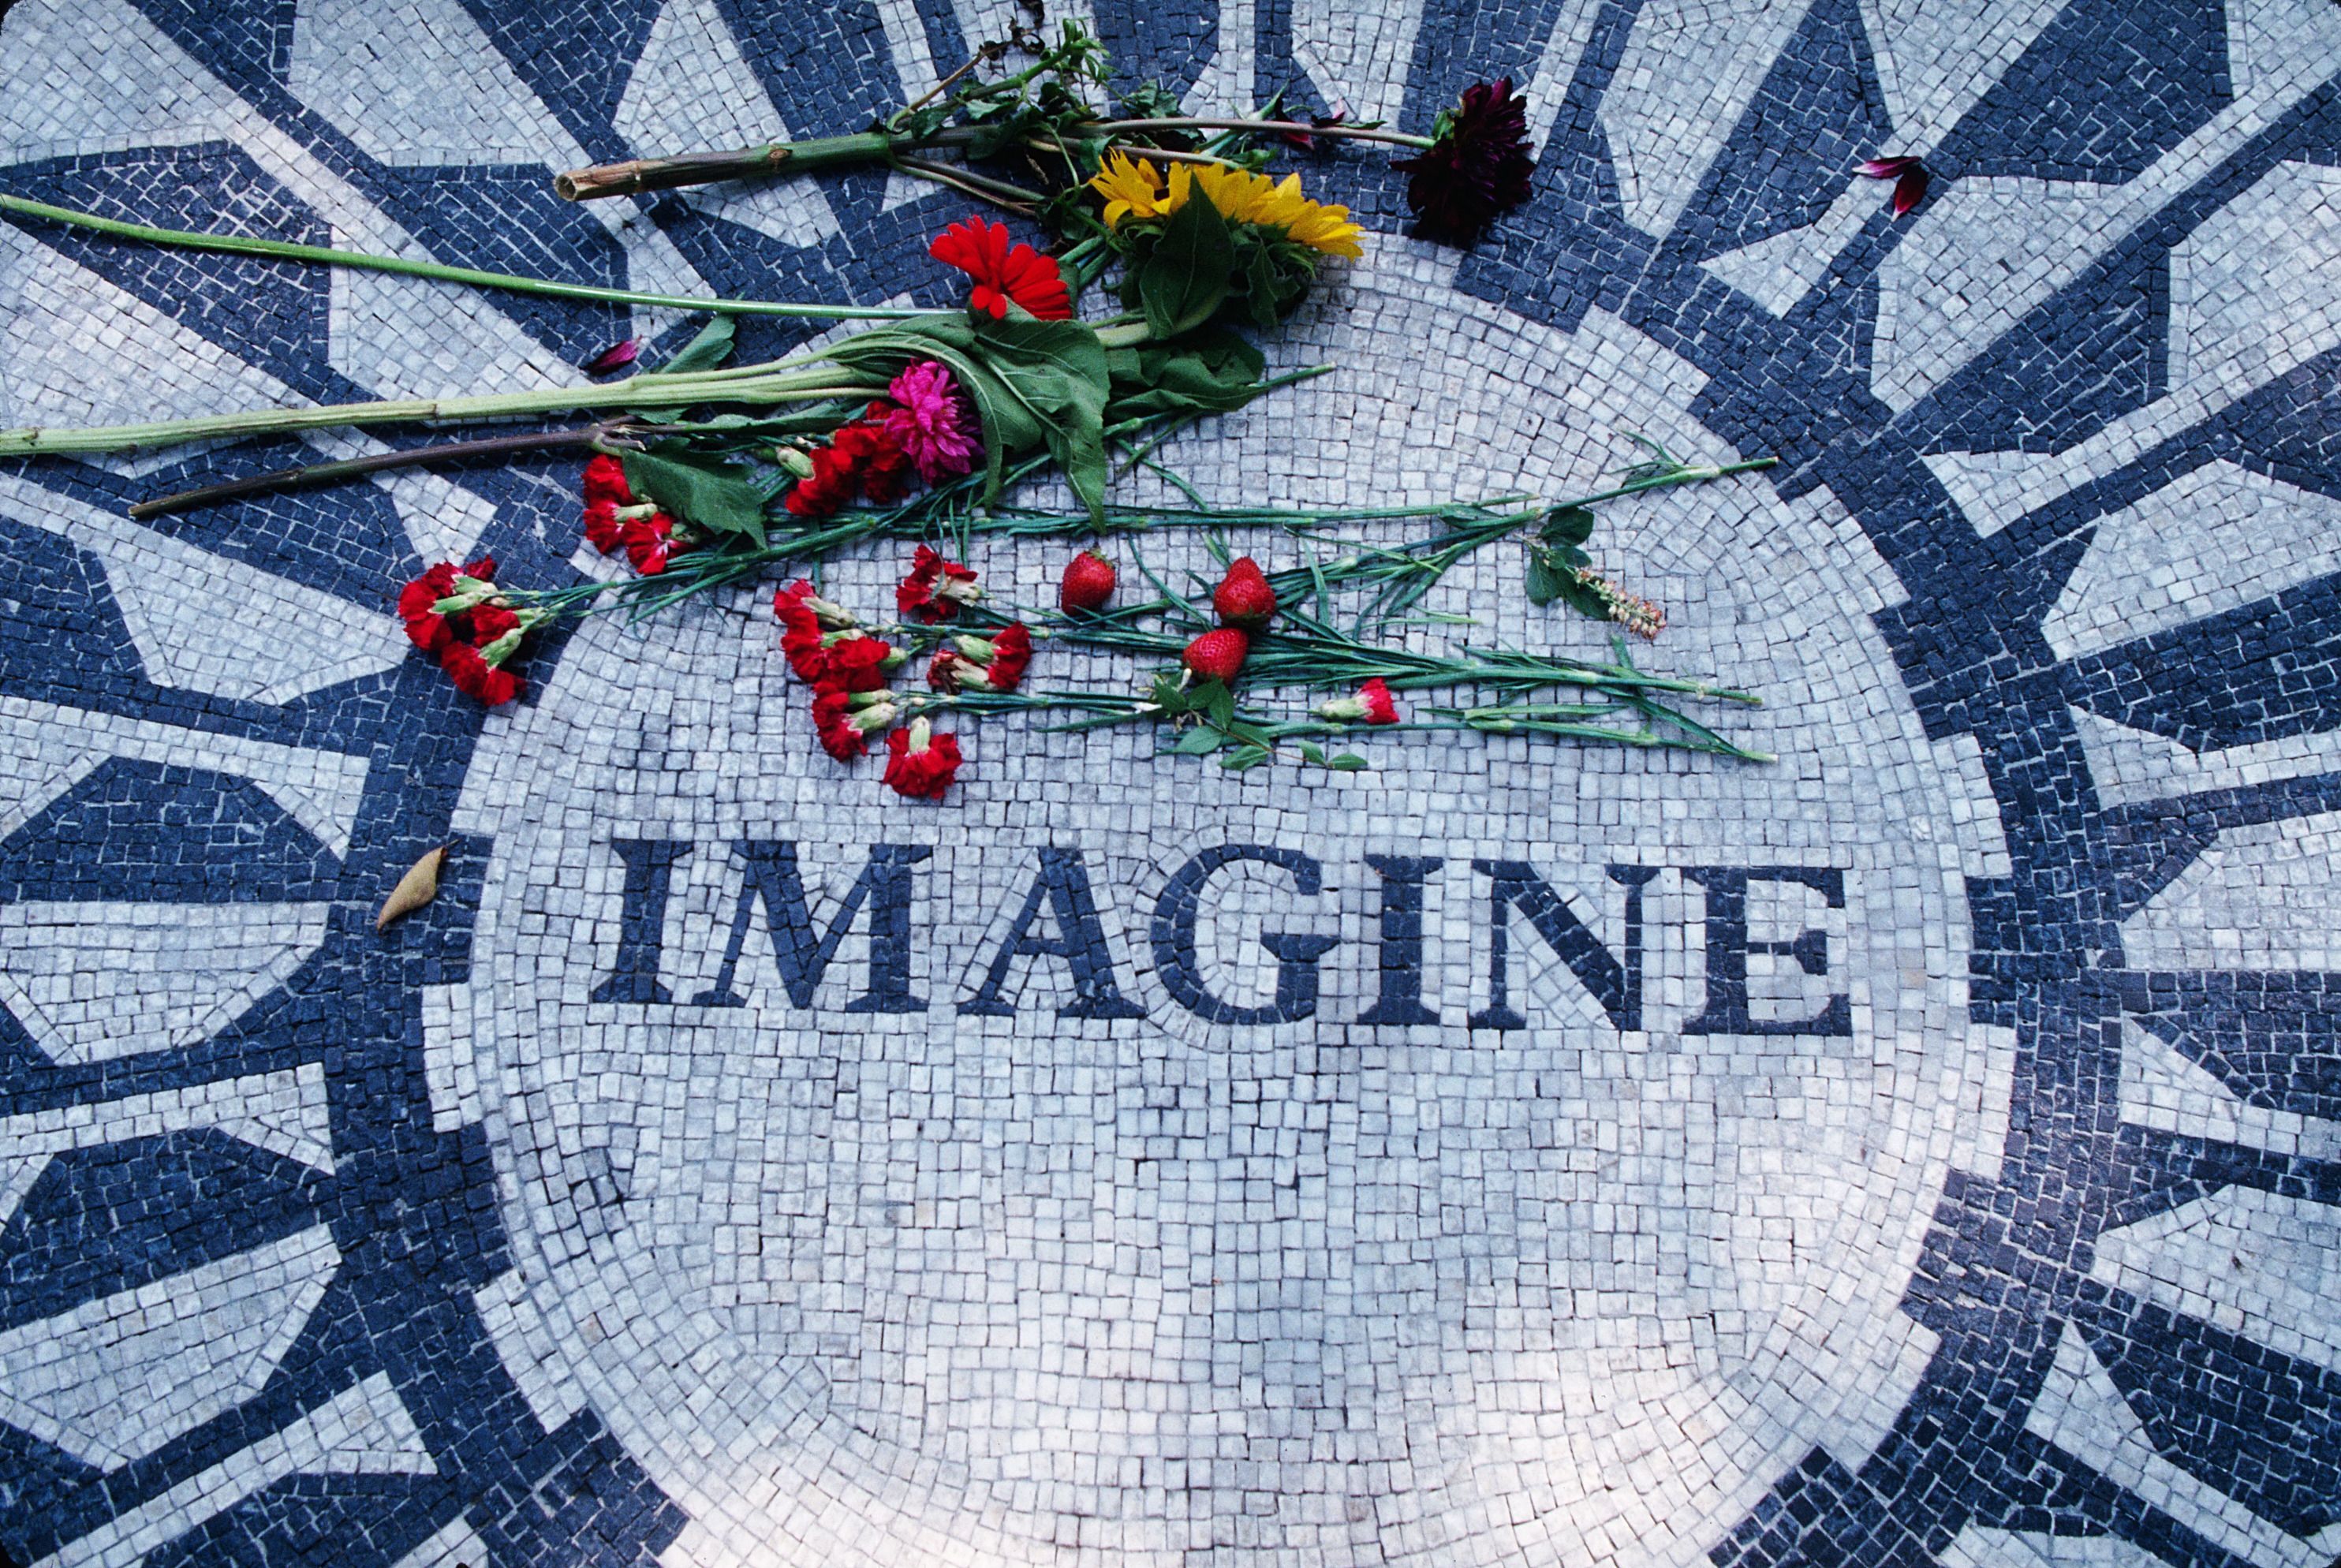 Download New York City Central Park John Lennon Imagine 372000 50